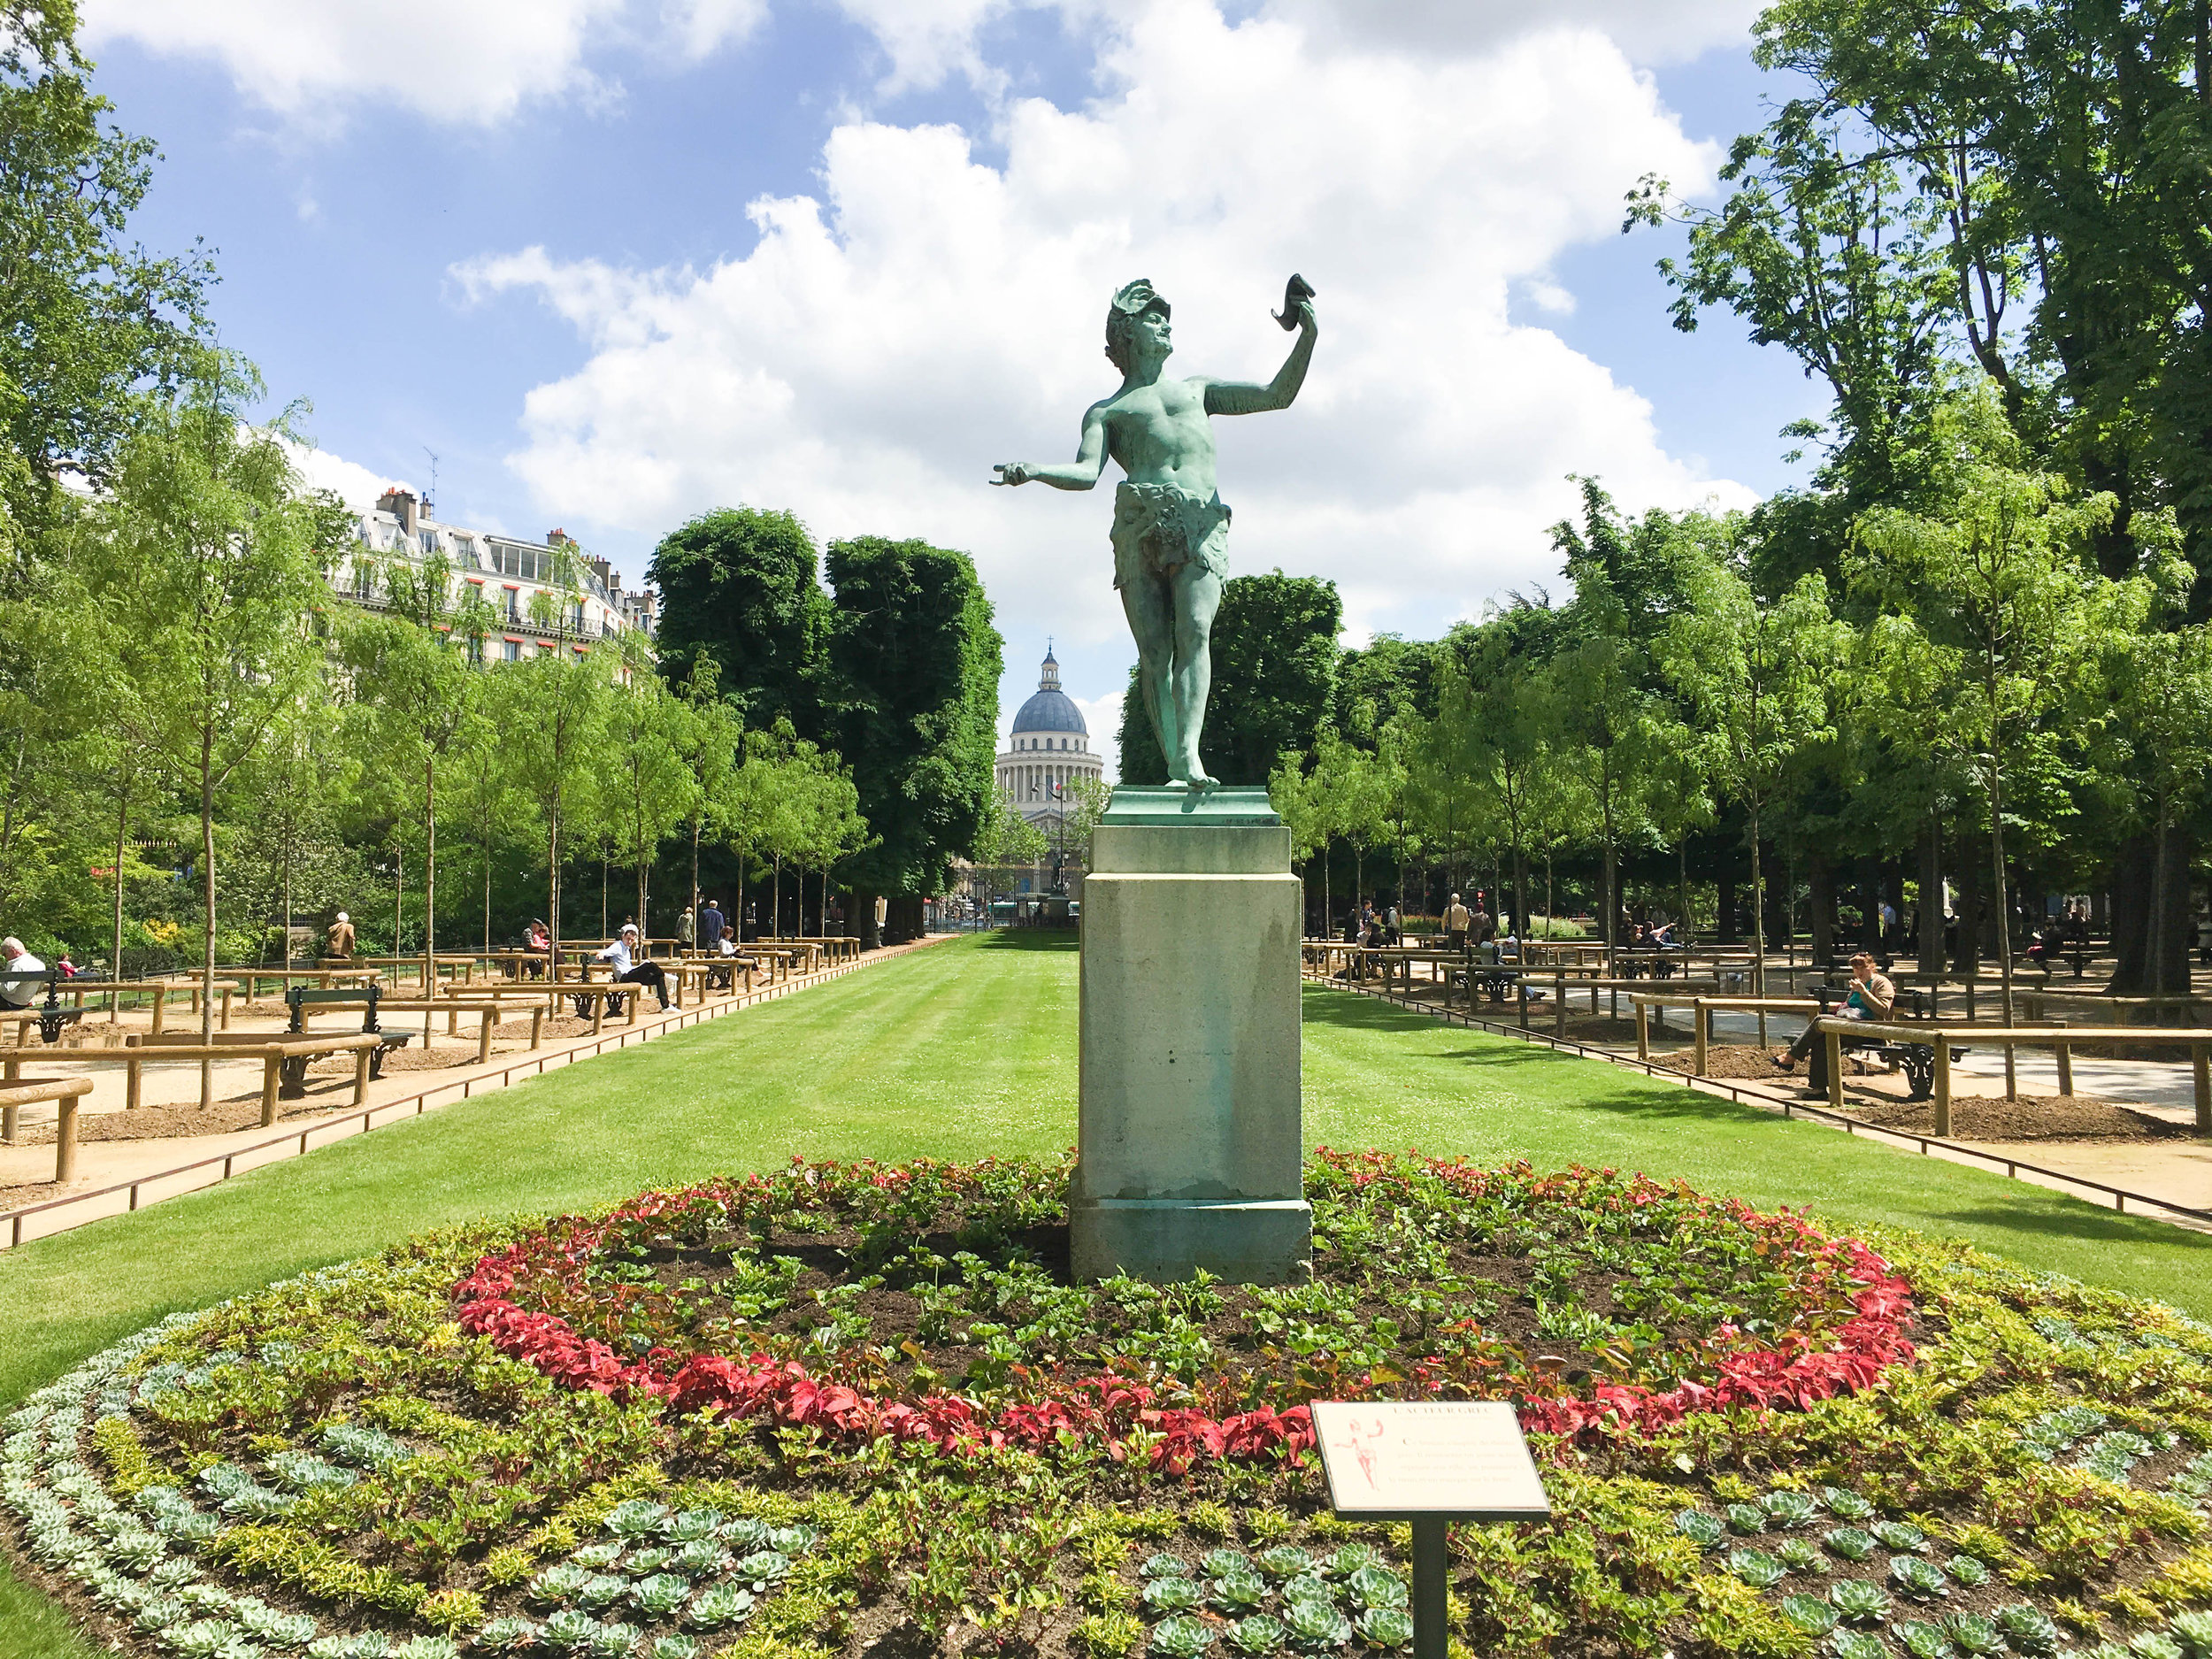 Luxembourg Garden in Paris